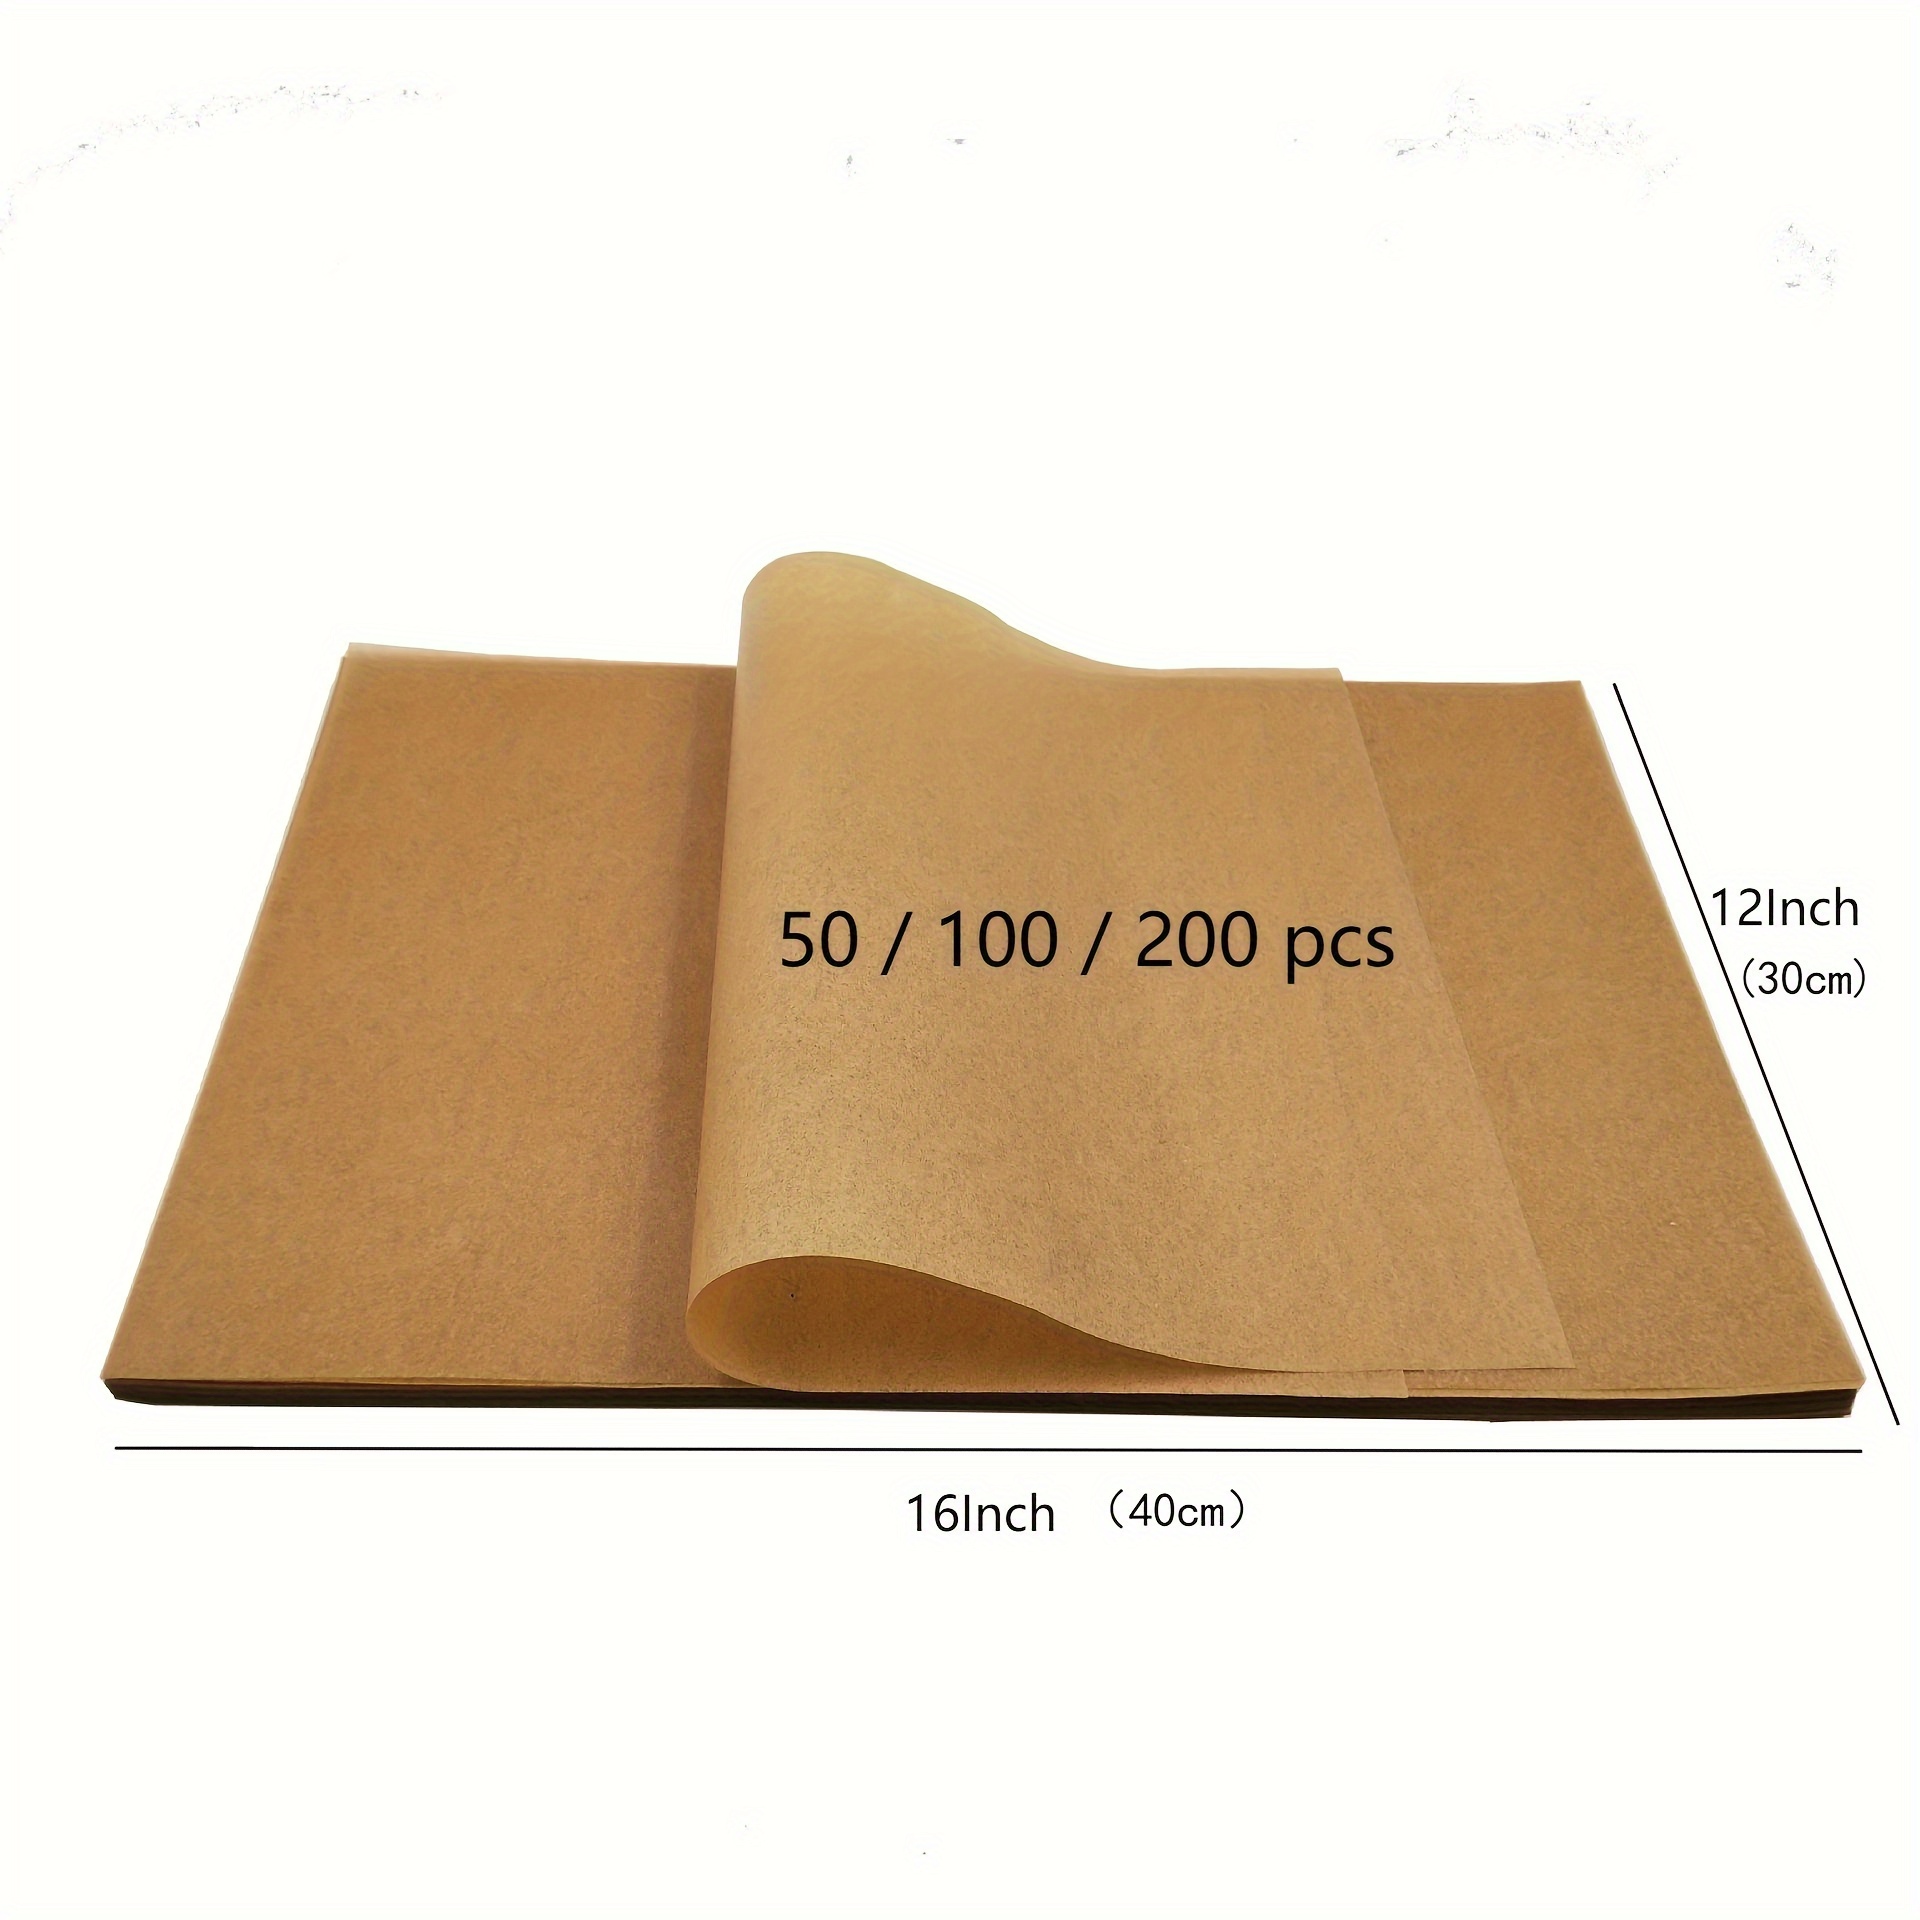 200PCS Unbleached Parchment Paper sheets 12 x 16 Precut Parchment Paper for